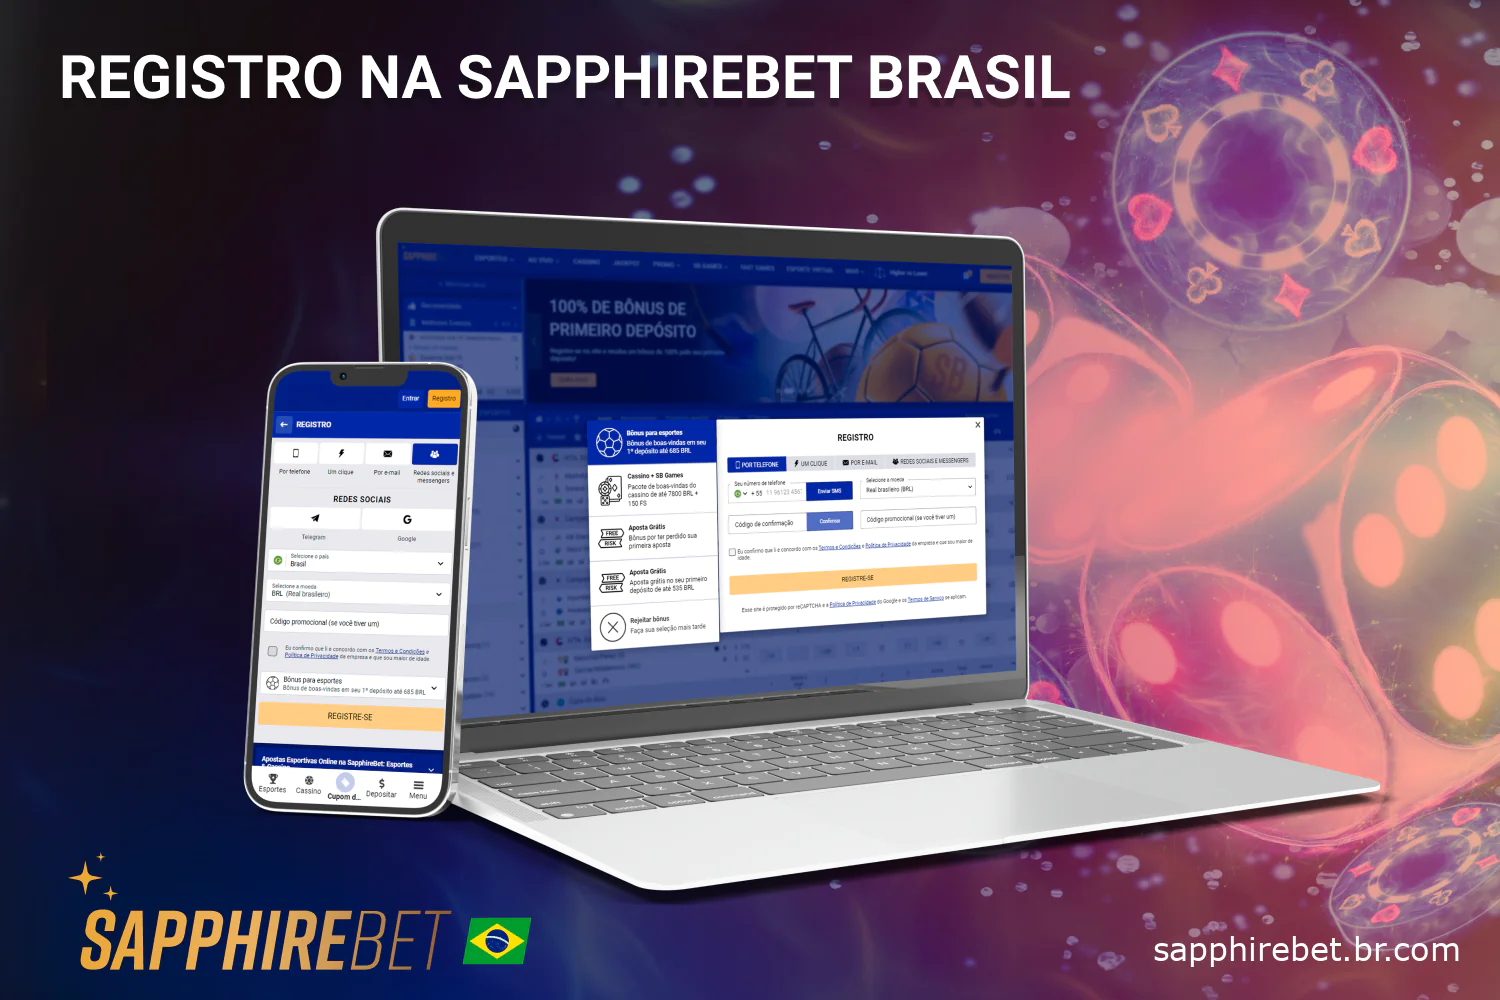 Os jogadores brasileiros precisam passar pelo Sapphirebet registro para ter acesso a todos os serviços de apostas e jogos de azar